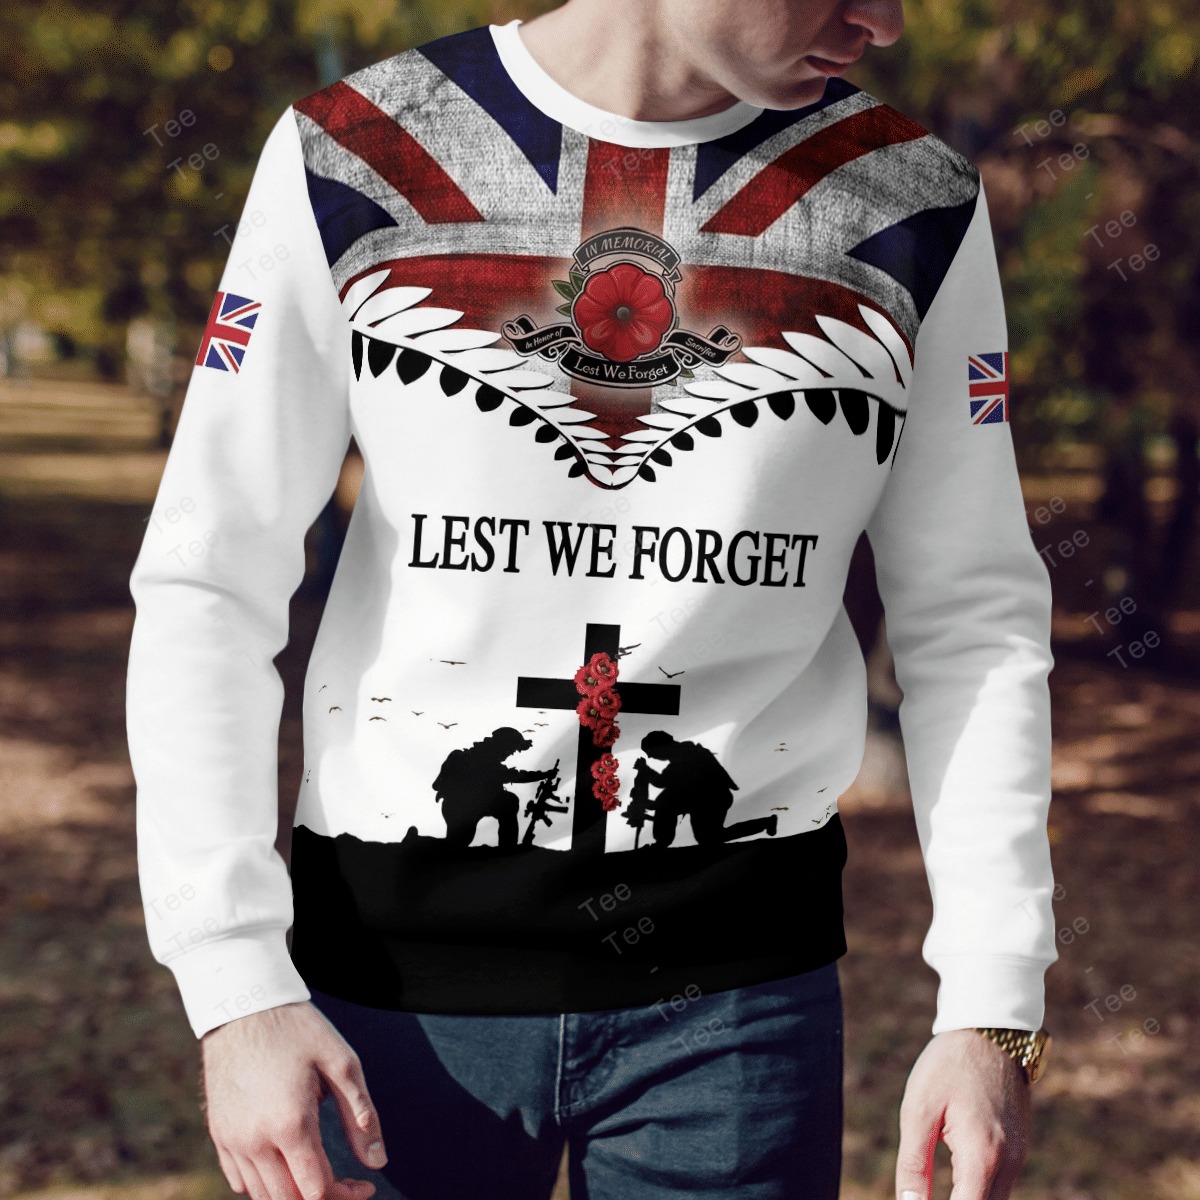 Lest we forget Veteran American flag 3d shirt, hoodie 10